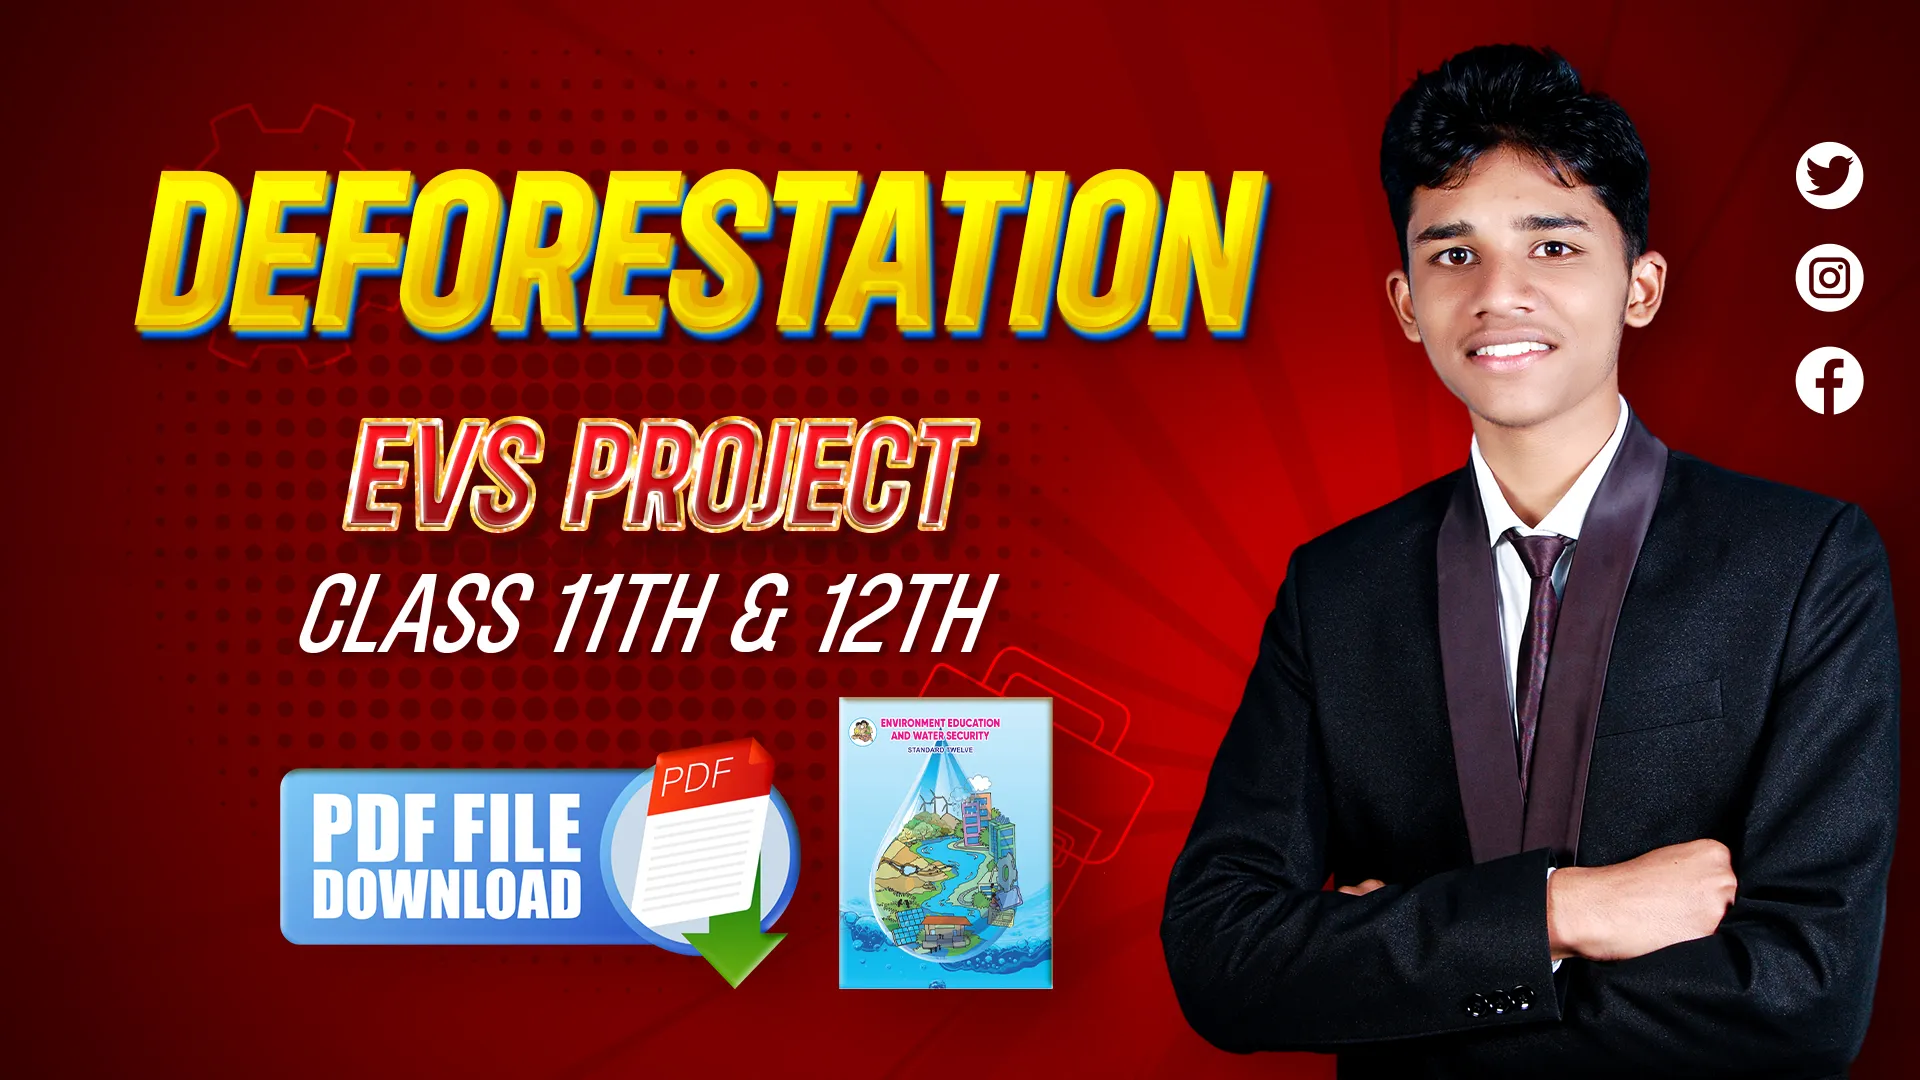 methodology of deforestation evs project